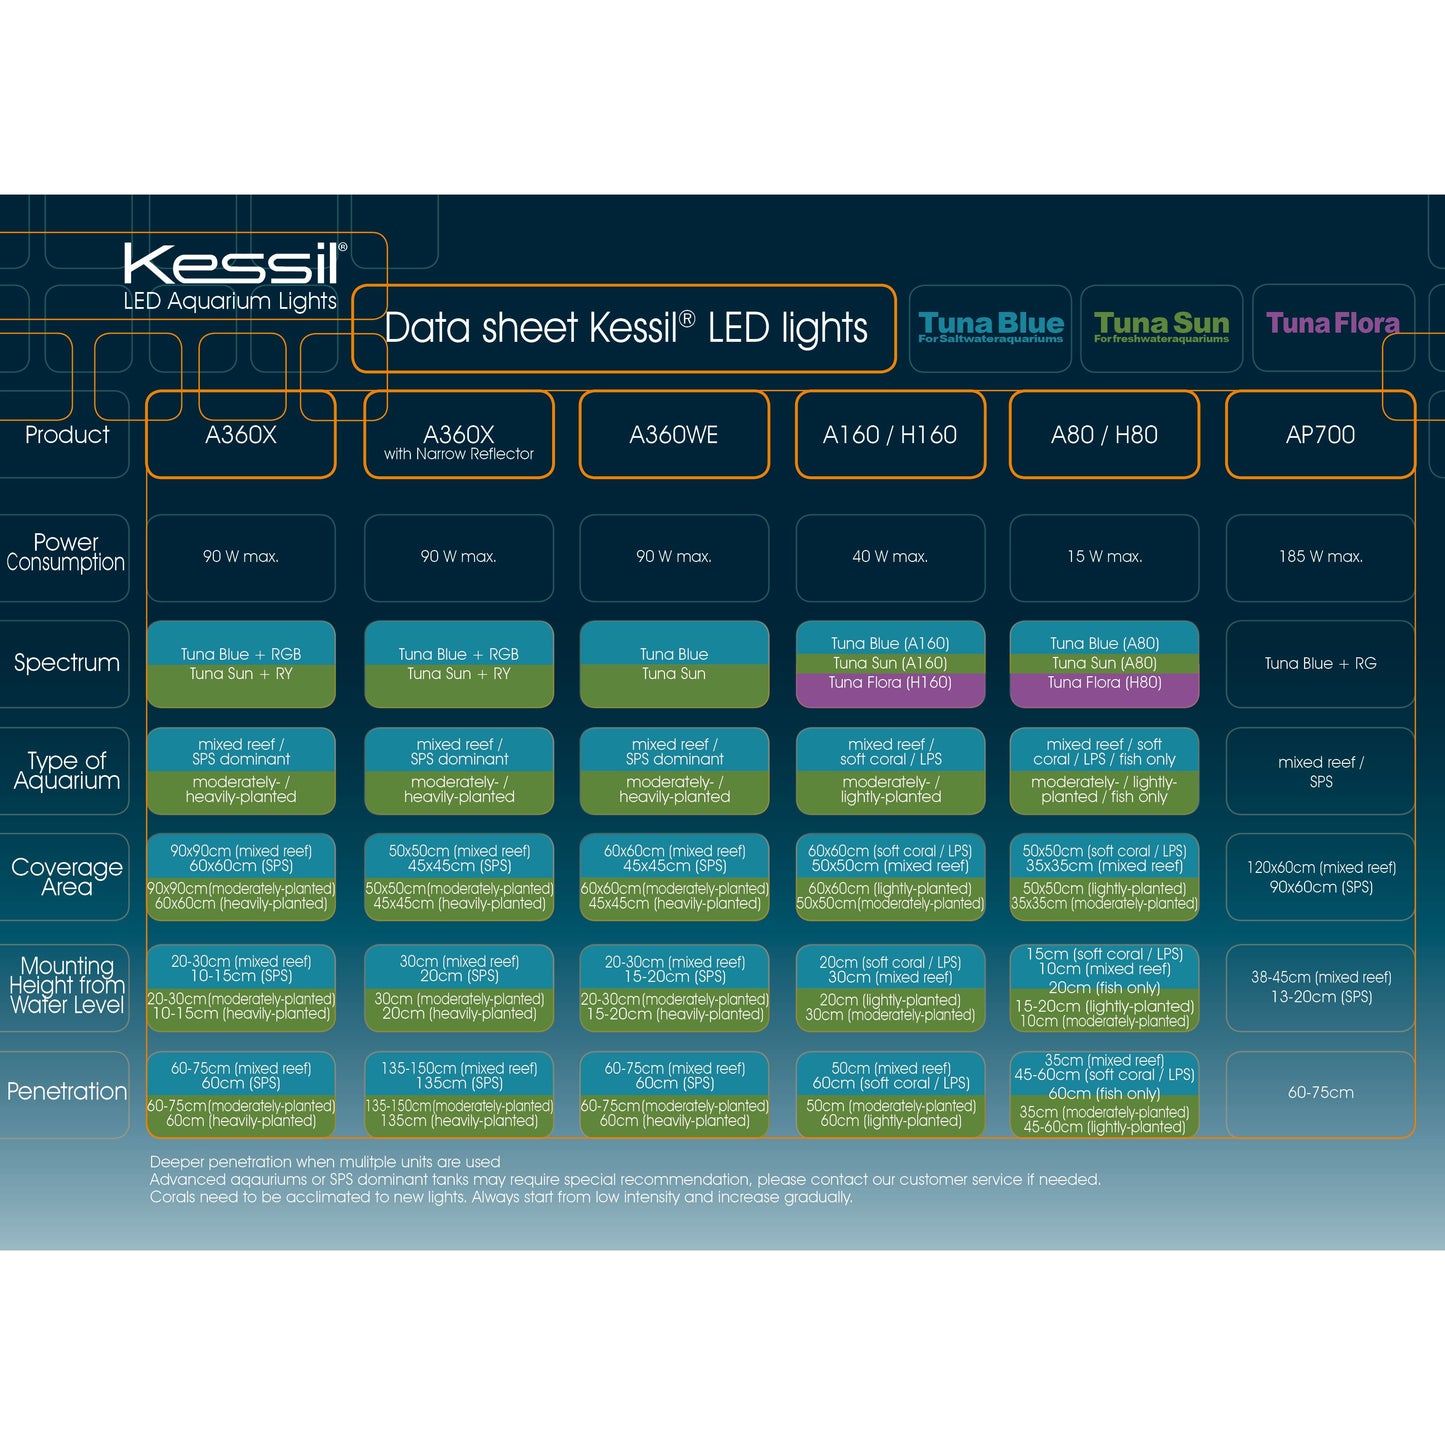 Kessil LED A80 Tuna Blue